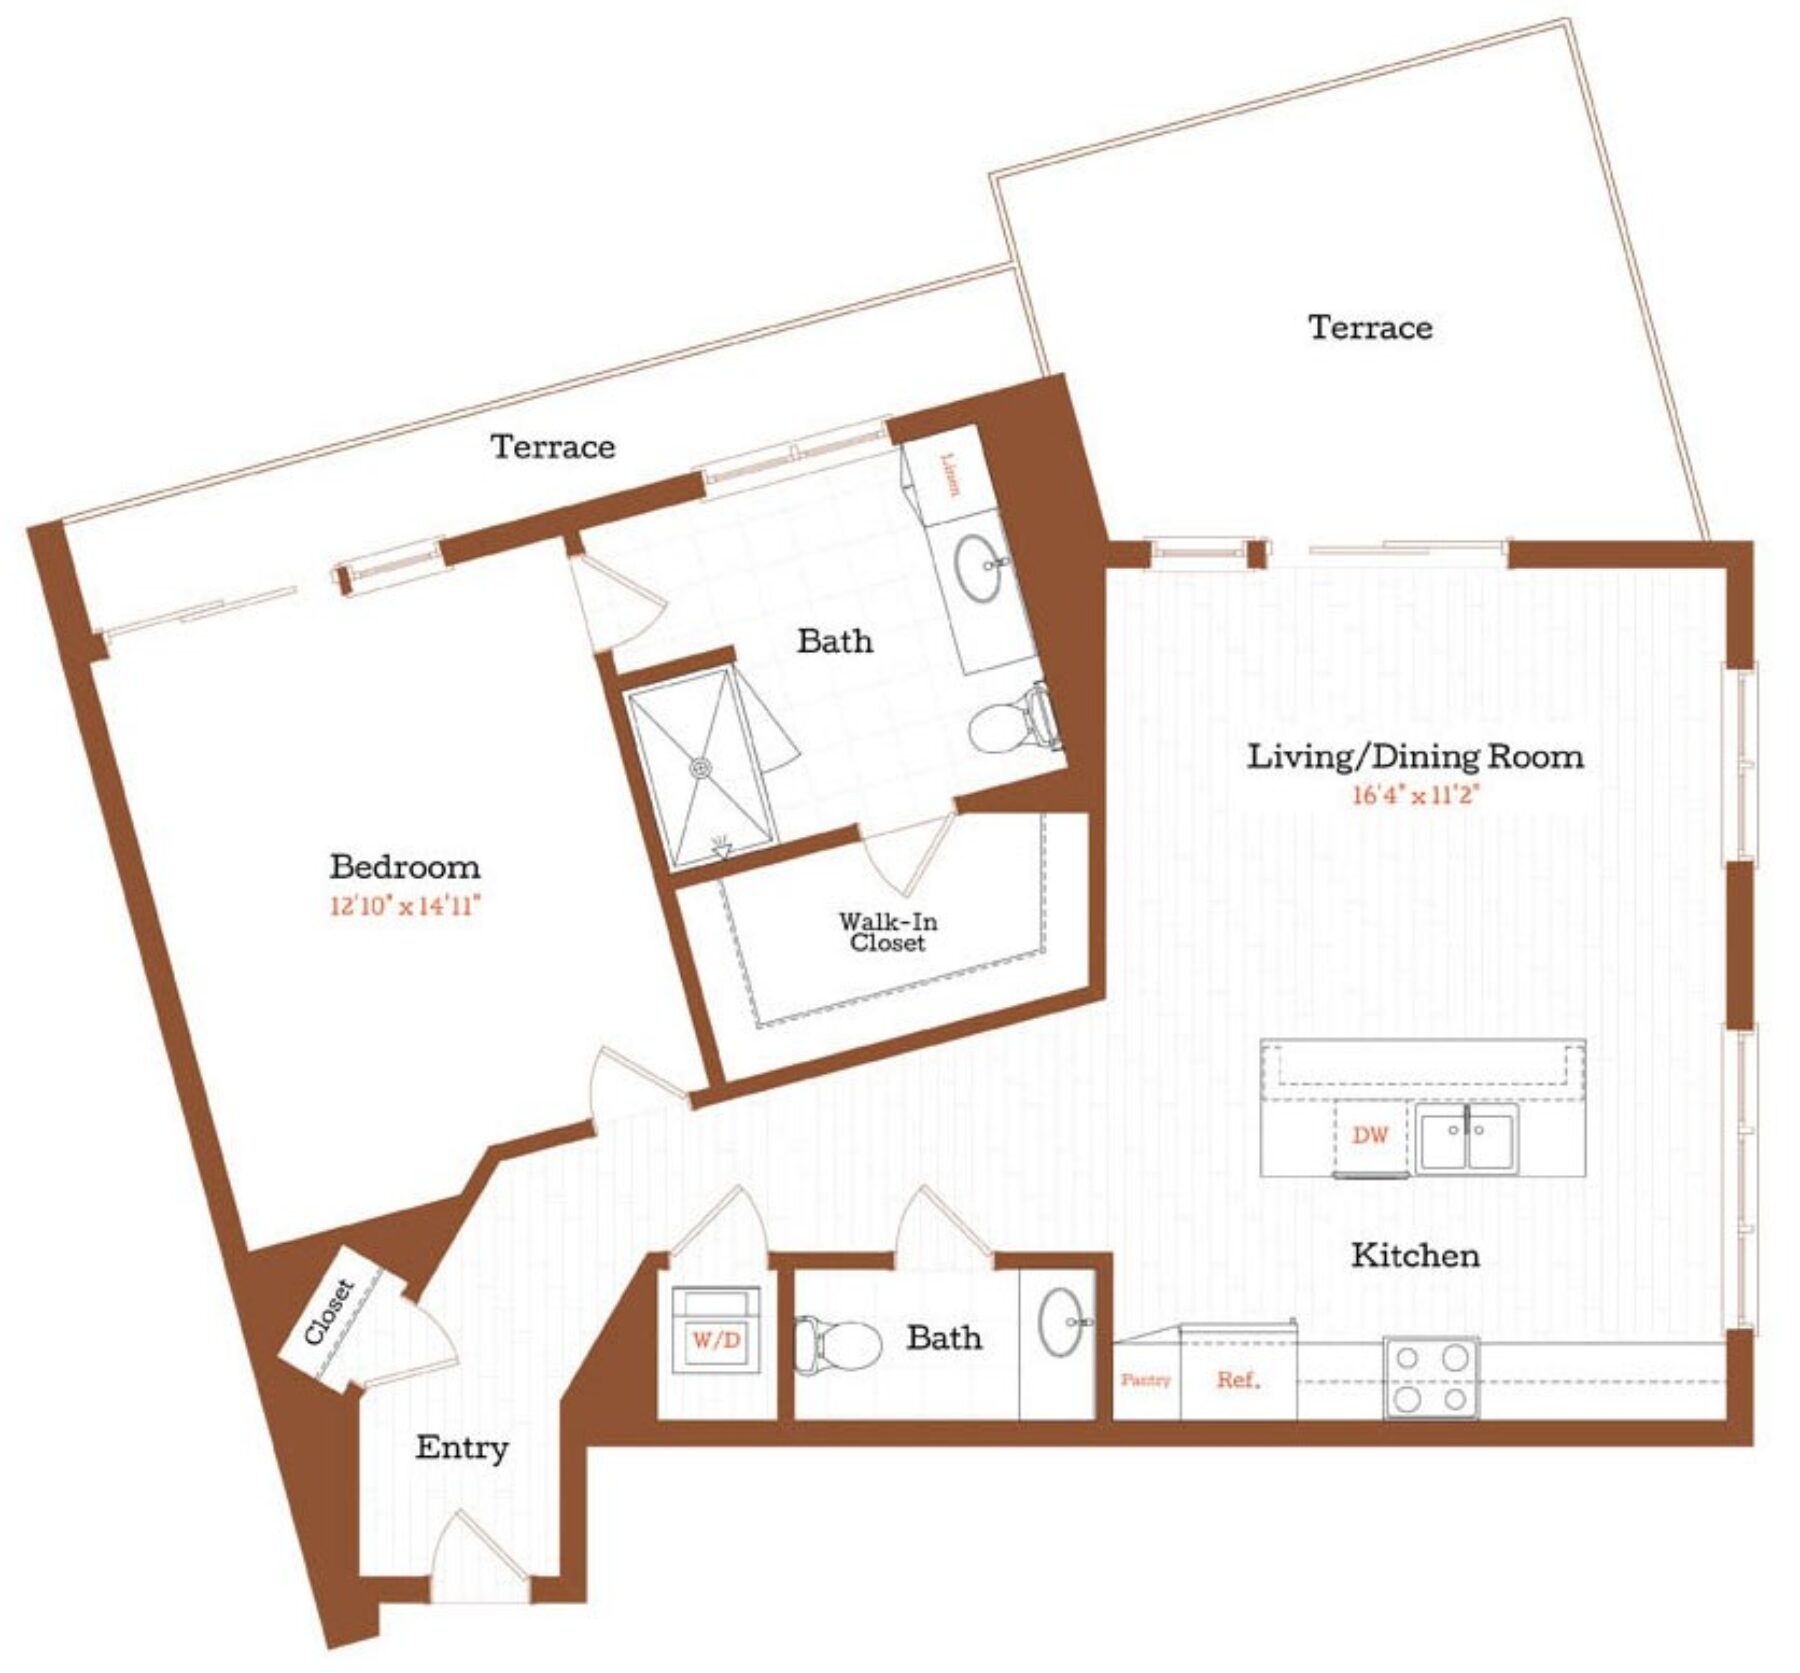 Plan Image: A8 - 1 Bedroom w/Terrace